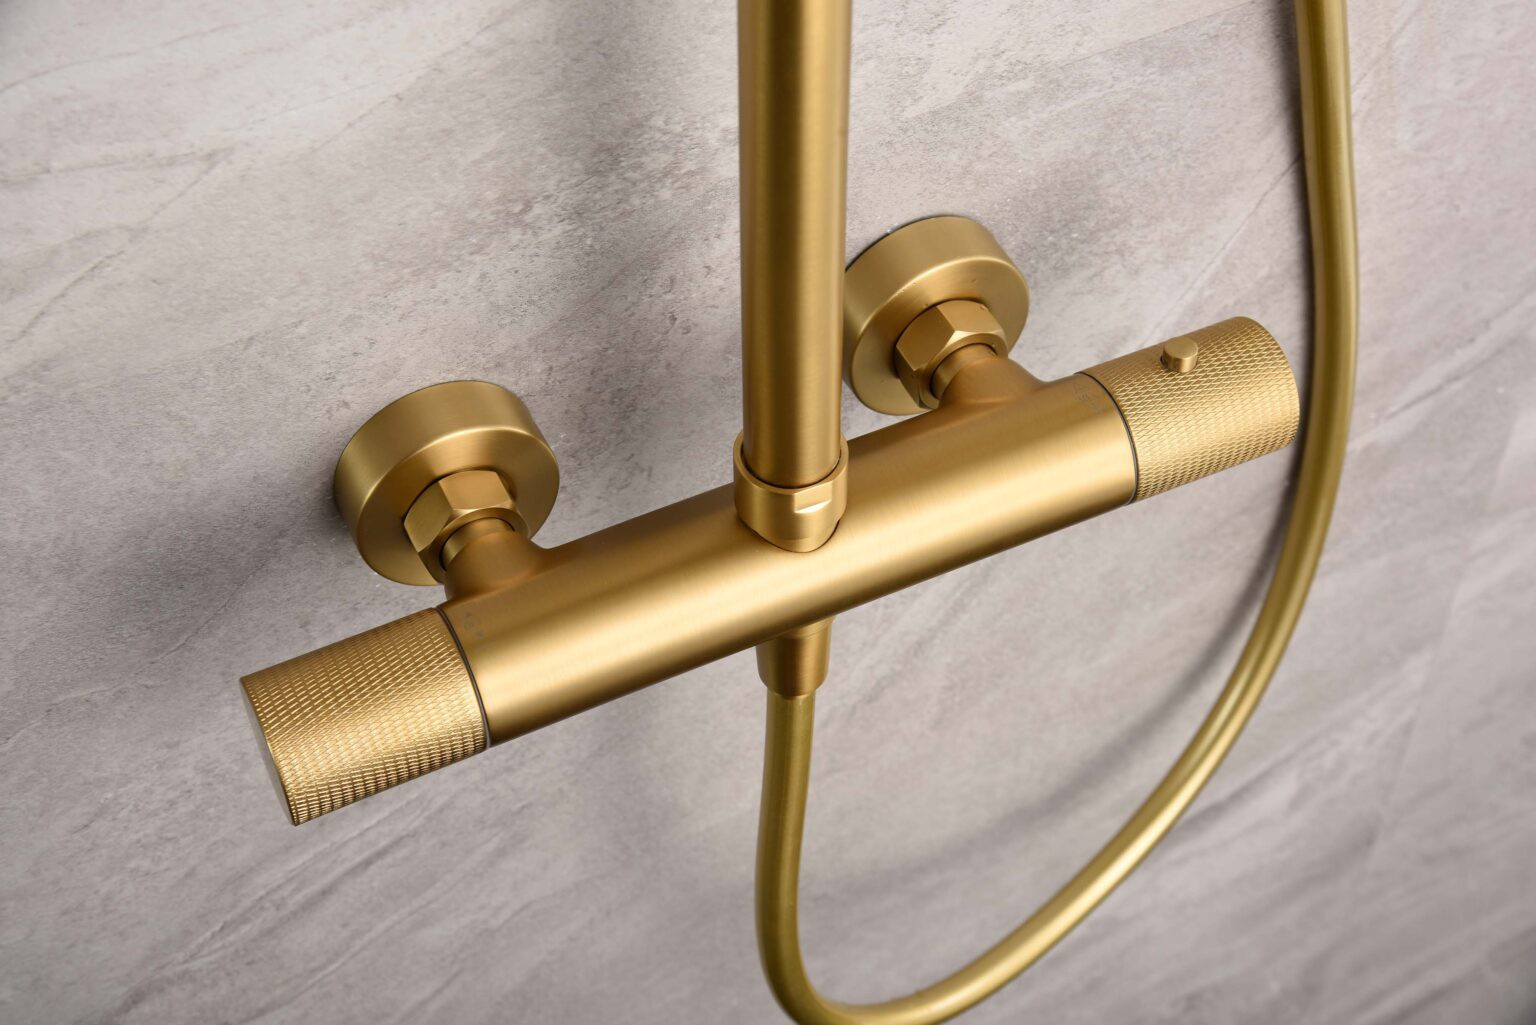 Grifería de baño y ducha termostática oro cepillado serie Line - Imex  Products